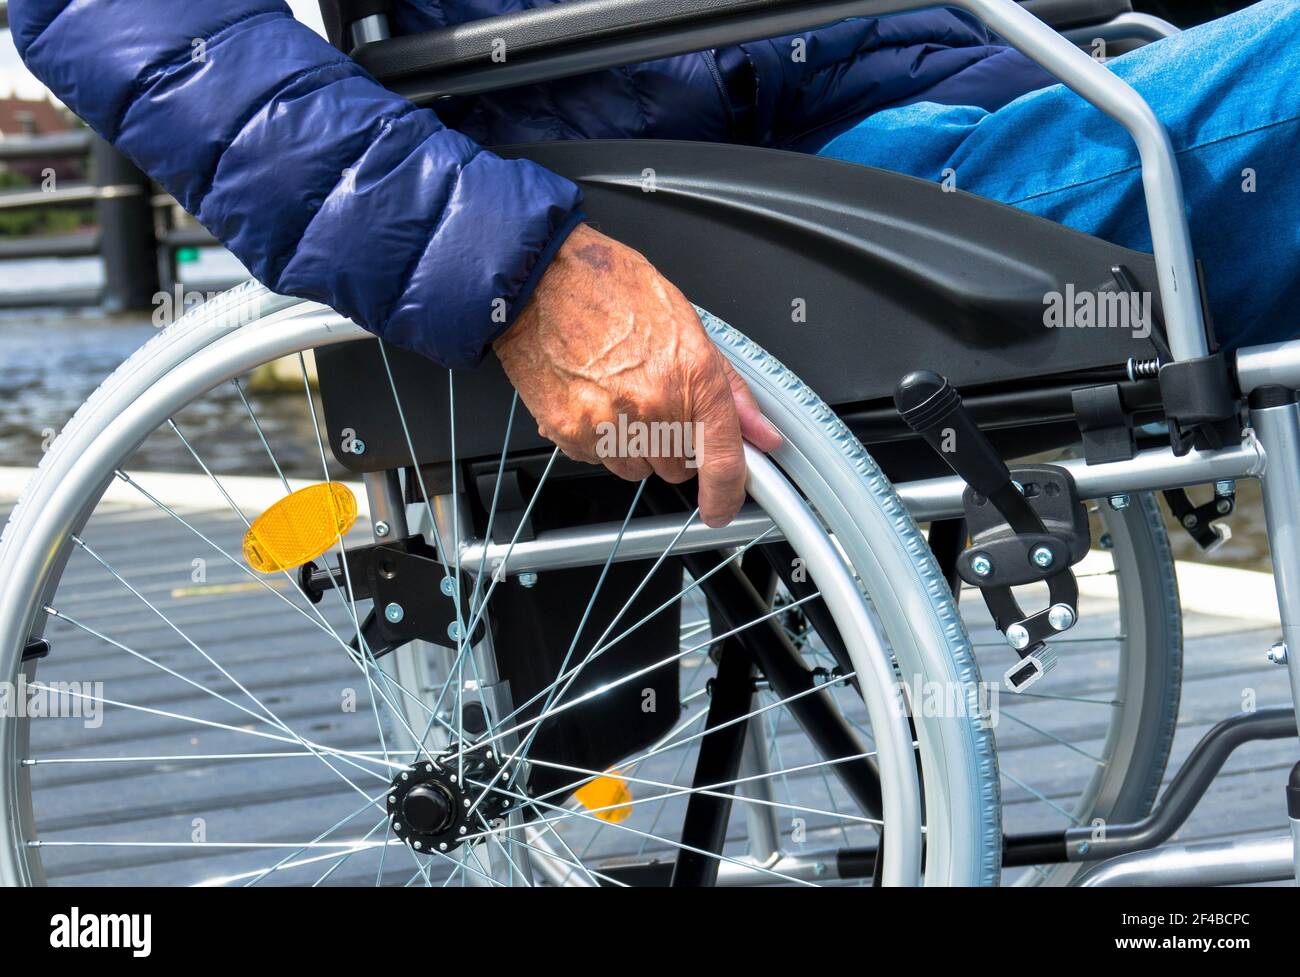 Uomo anziano che usa una sedia a rotelle. Da solo in una casa di riposo. Immagine acquisita durante la pandemia di covidio. Foto Stock